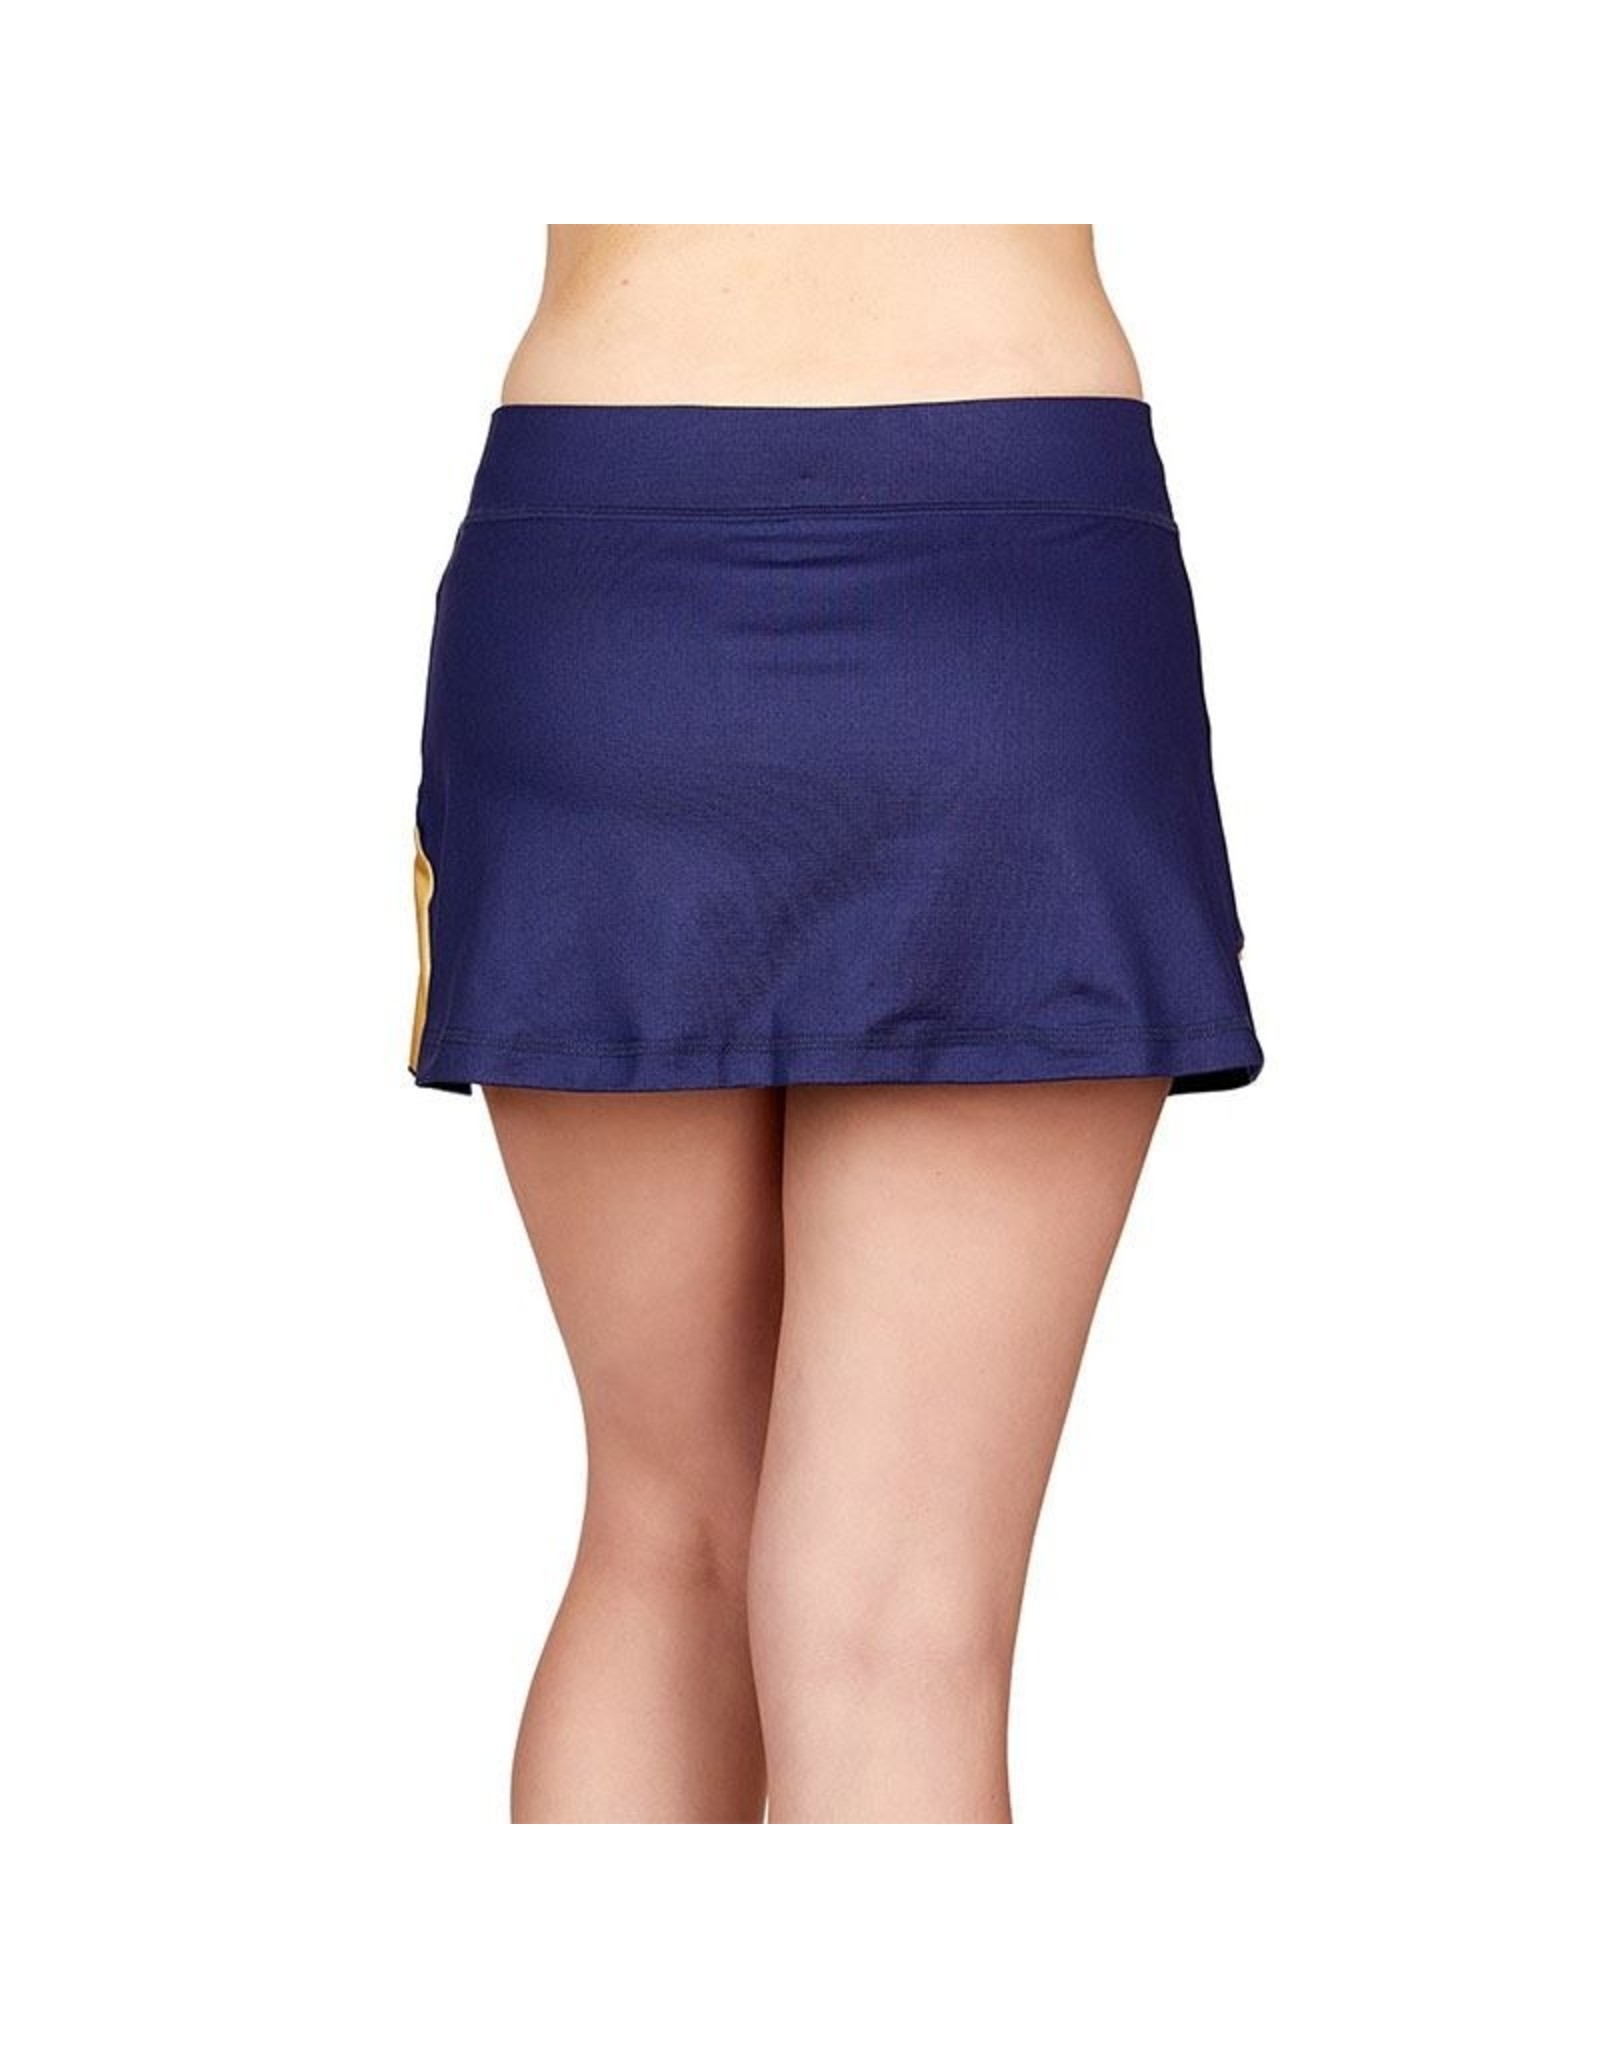 Allure 13 inch Skirt